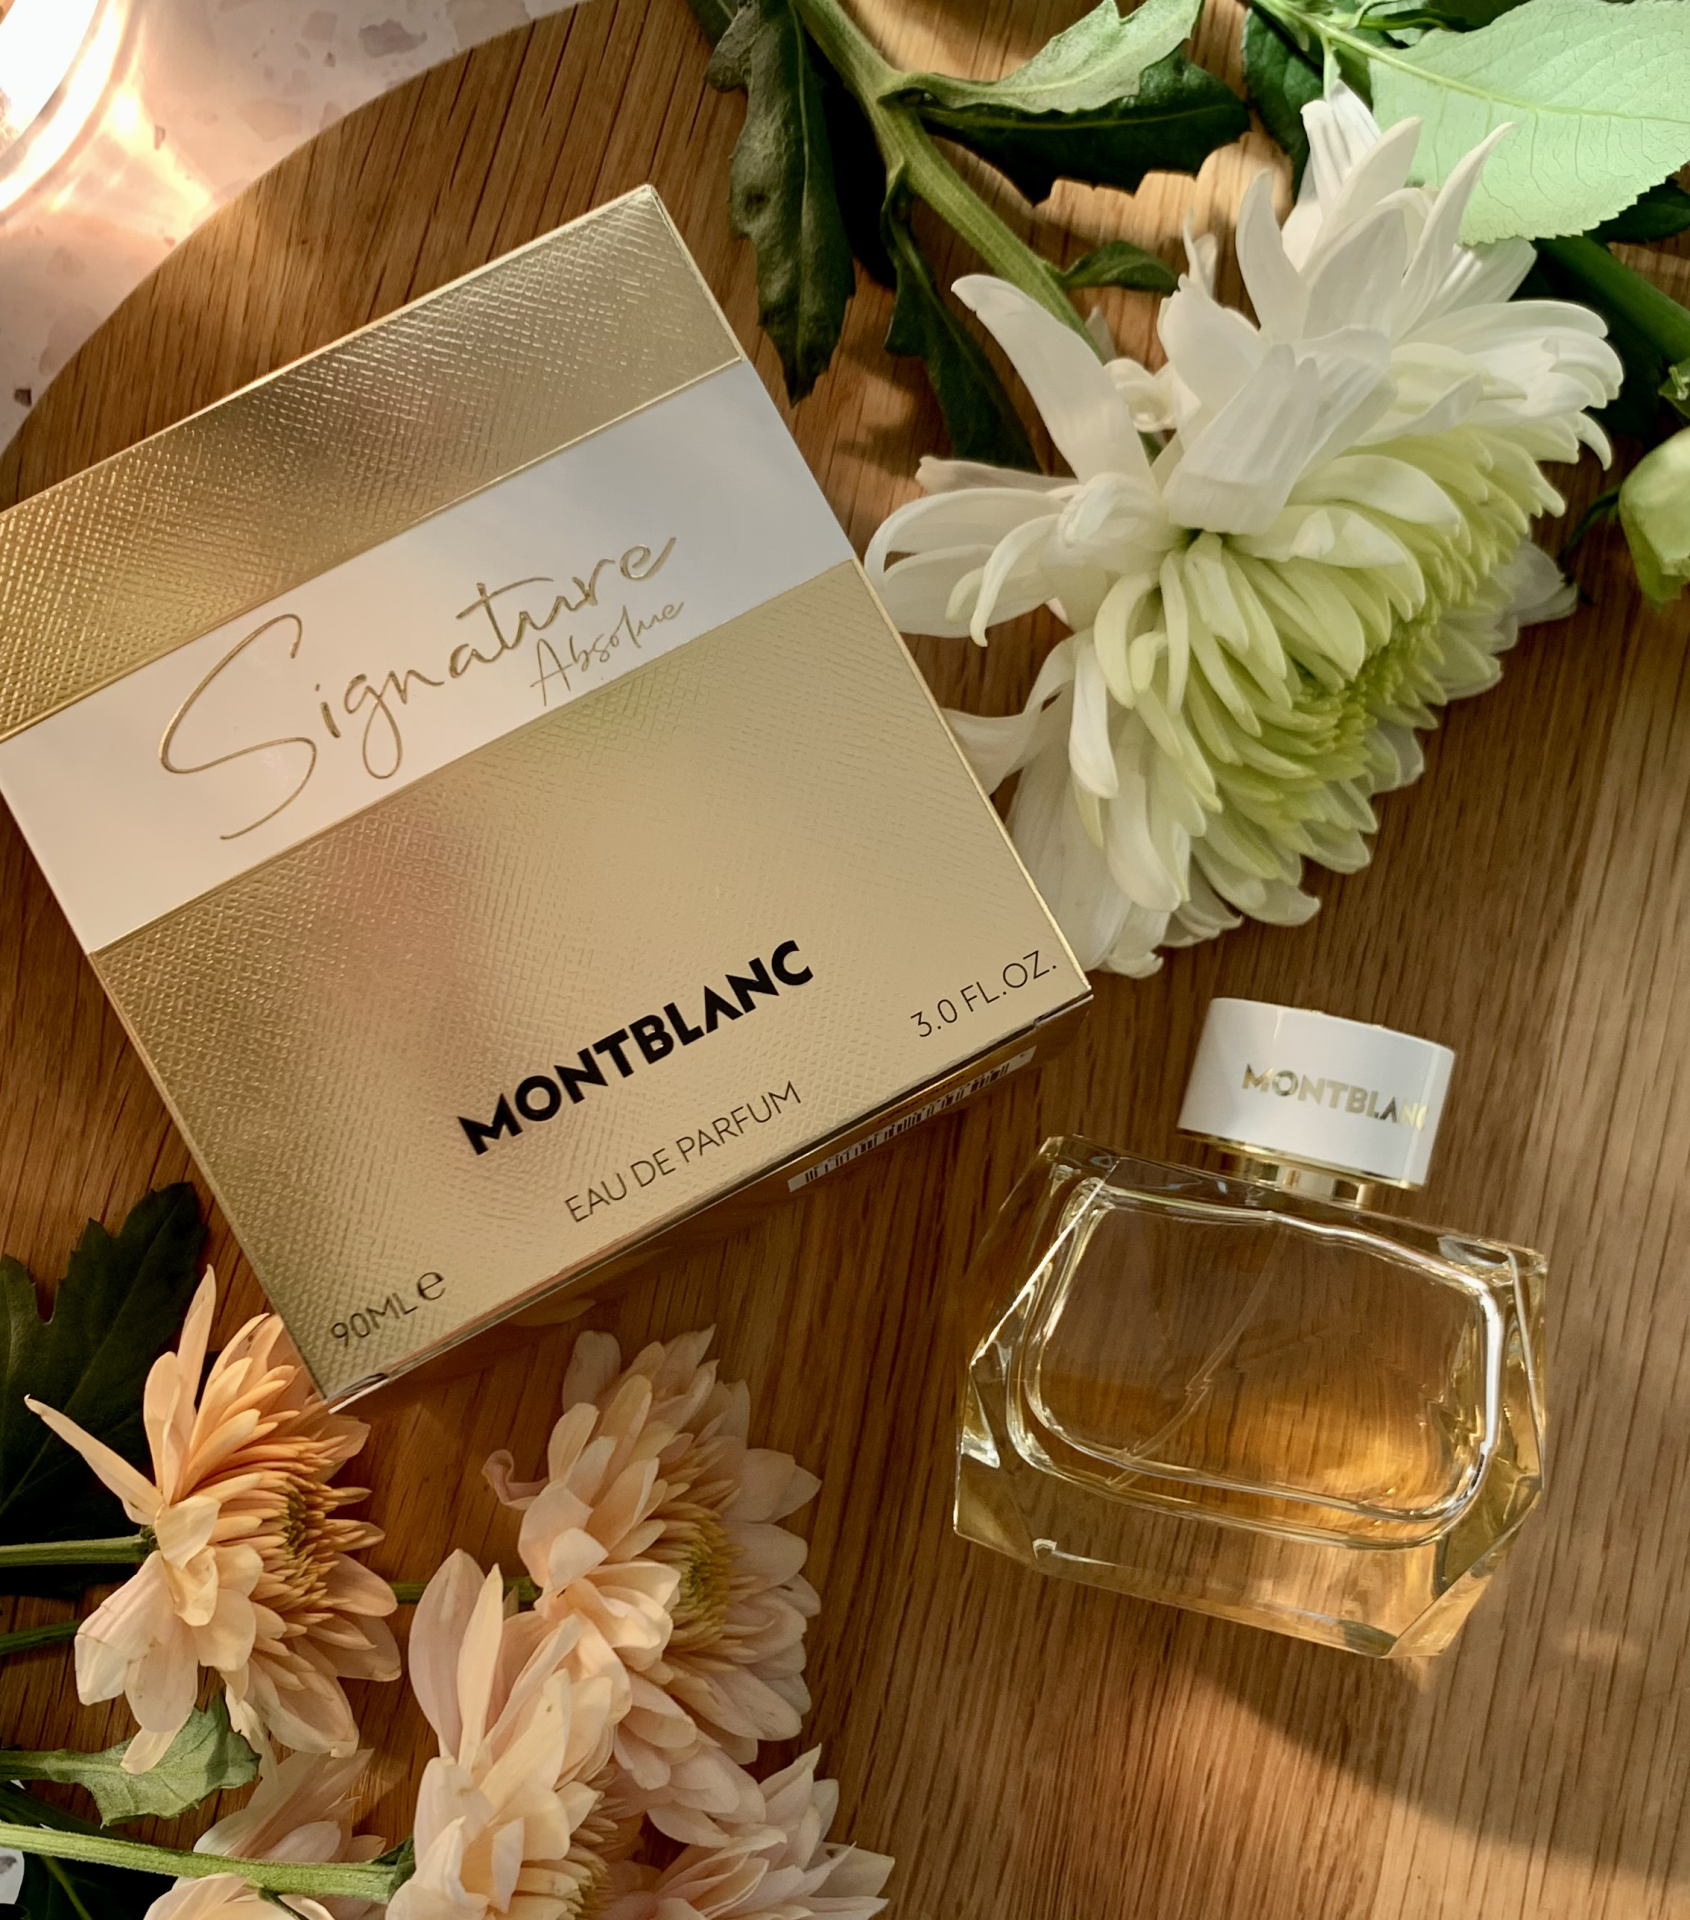 Review: Montblanc Signature Absolue Eau de Parfum 1